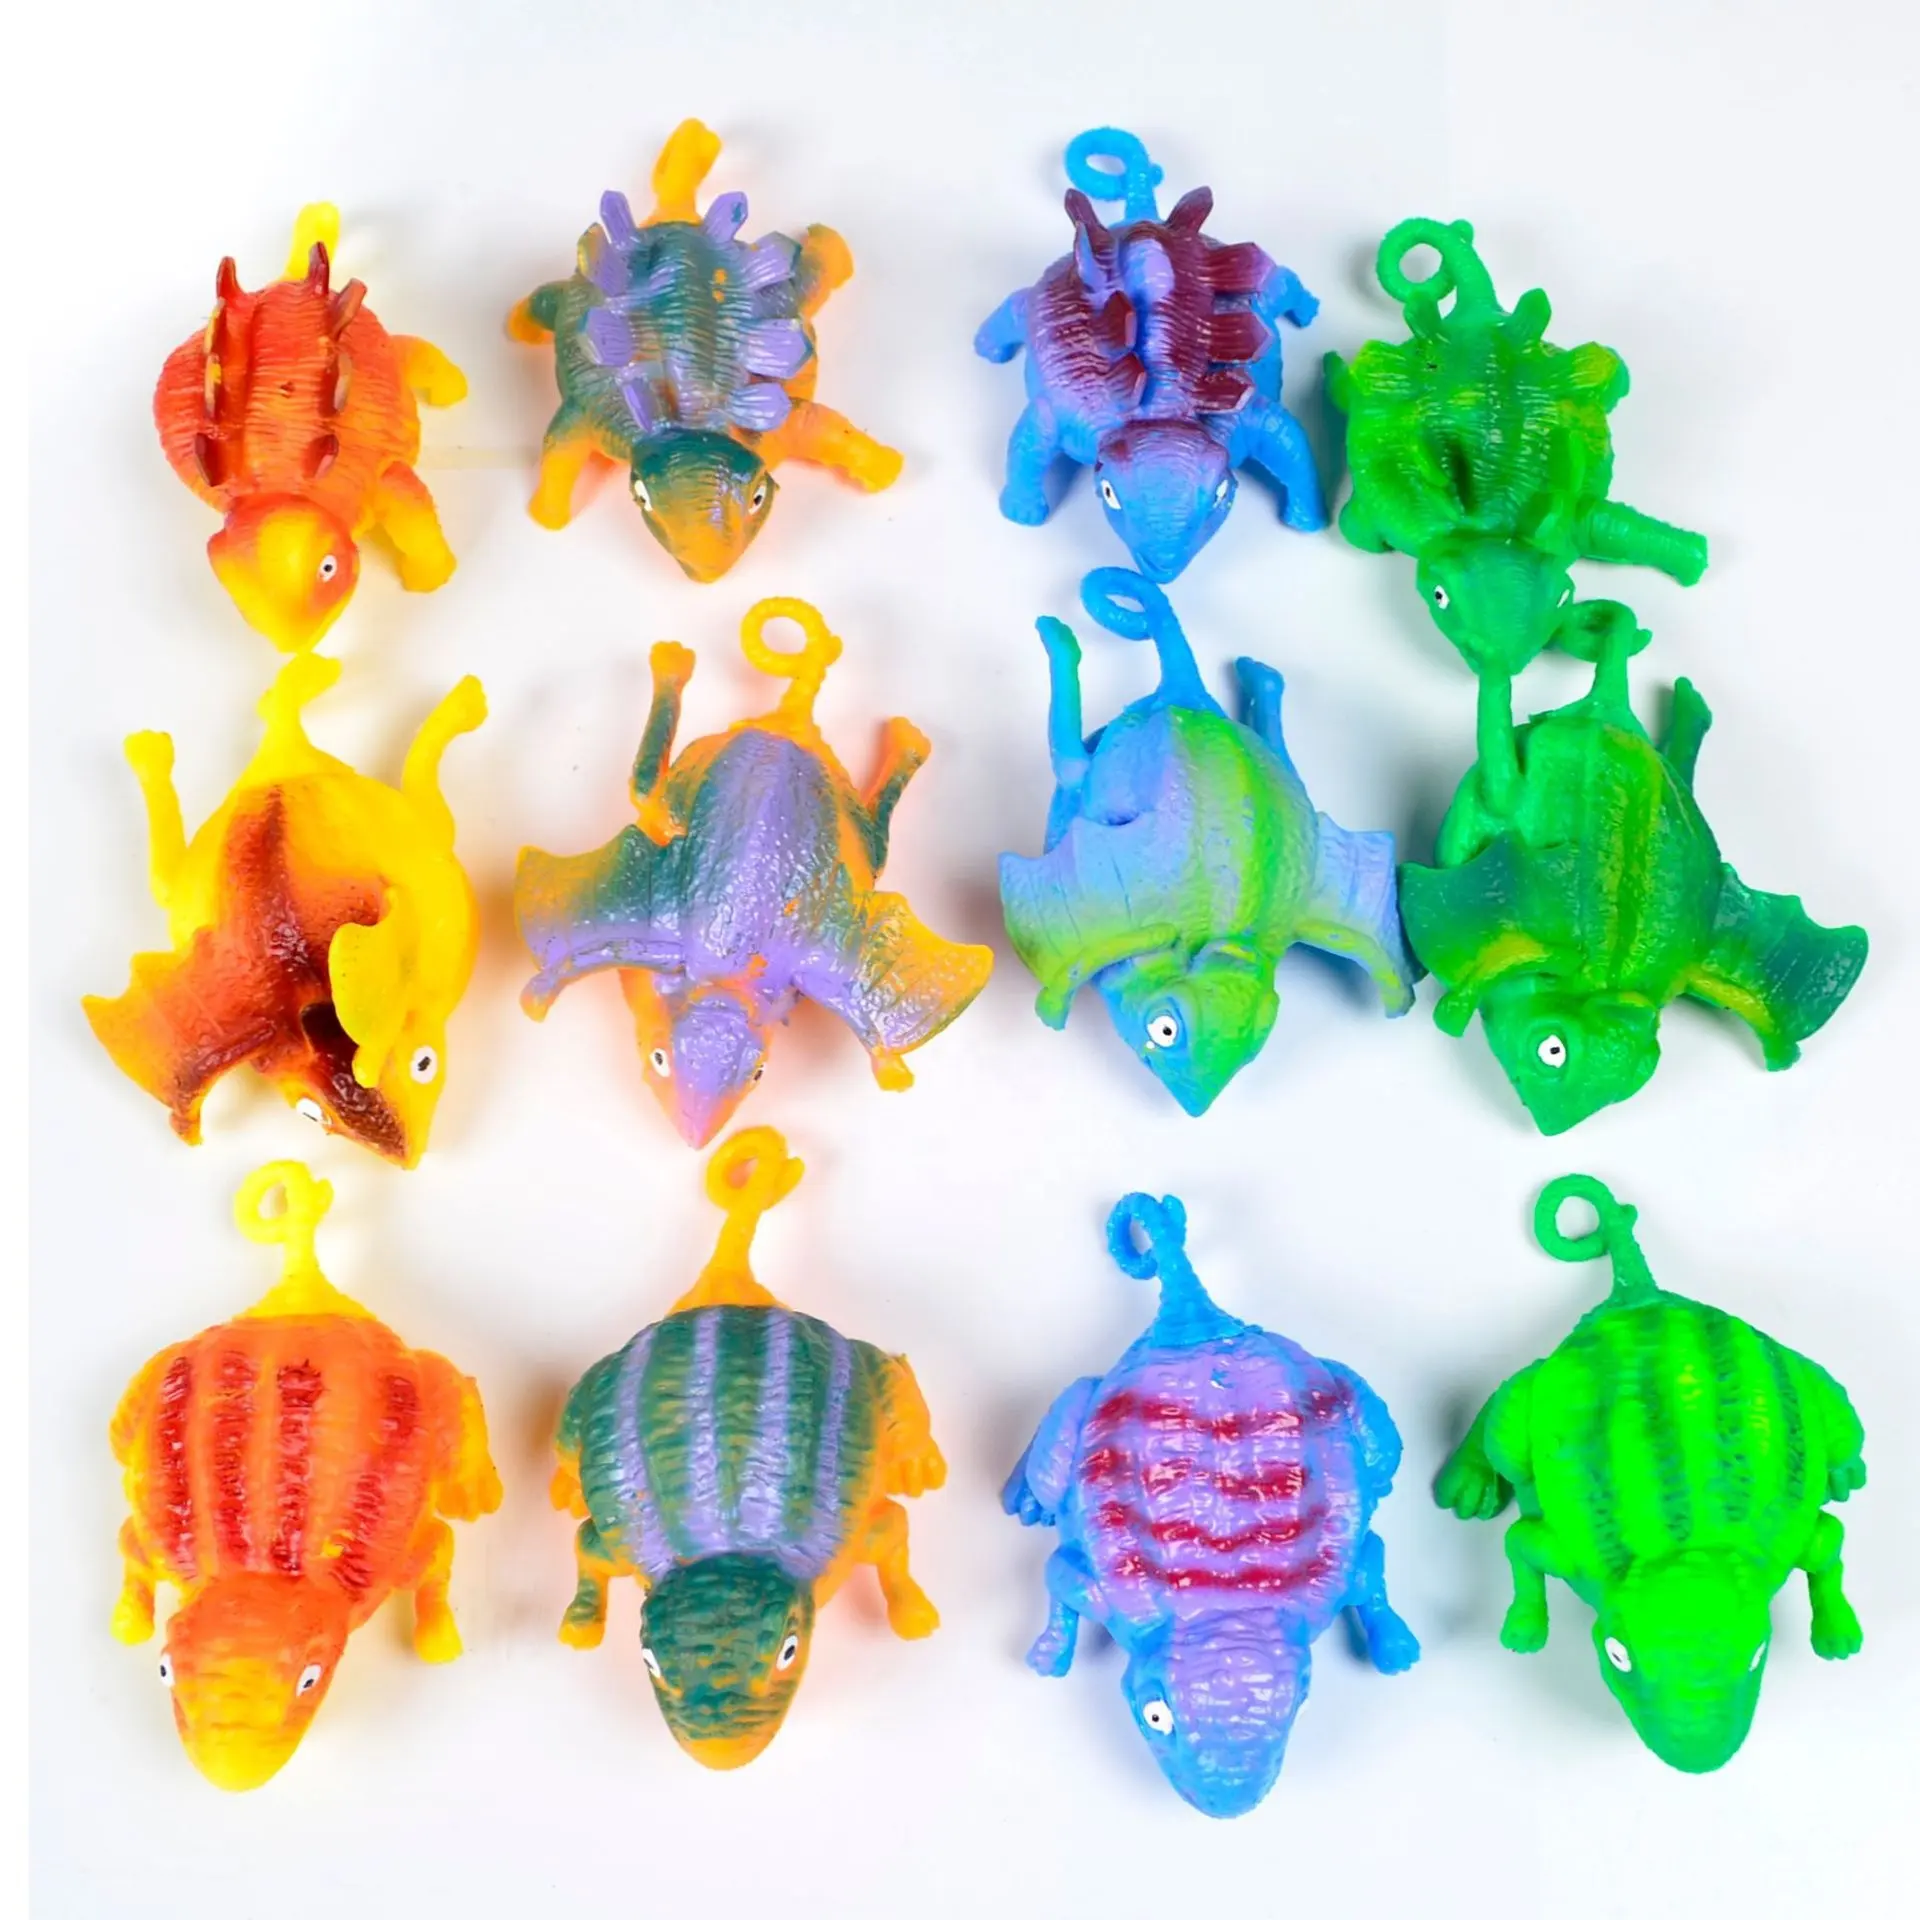 Ballon de dinosaure en forme d'animal, jouets pour enfants, ballon gonflable, bon marché